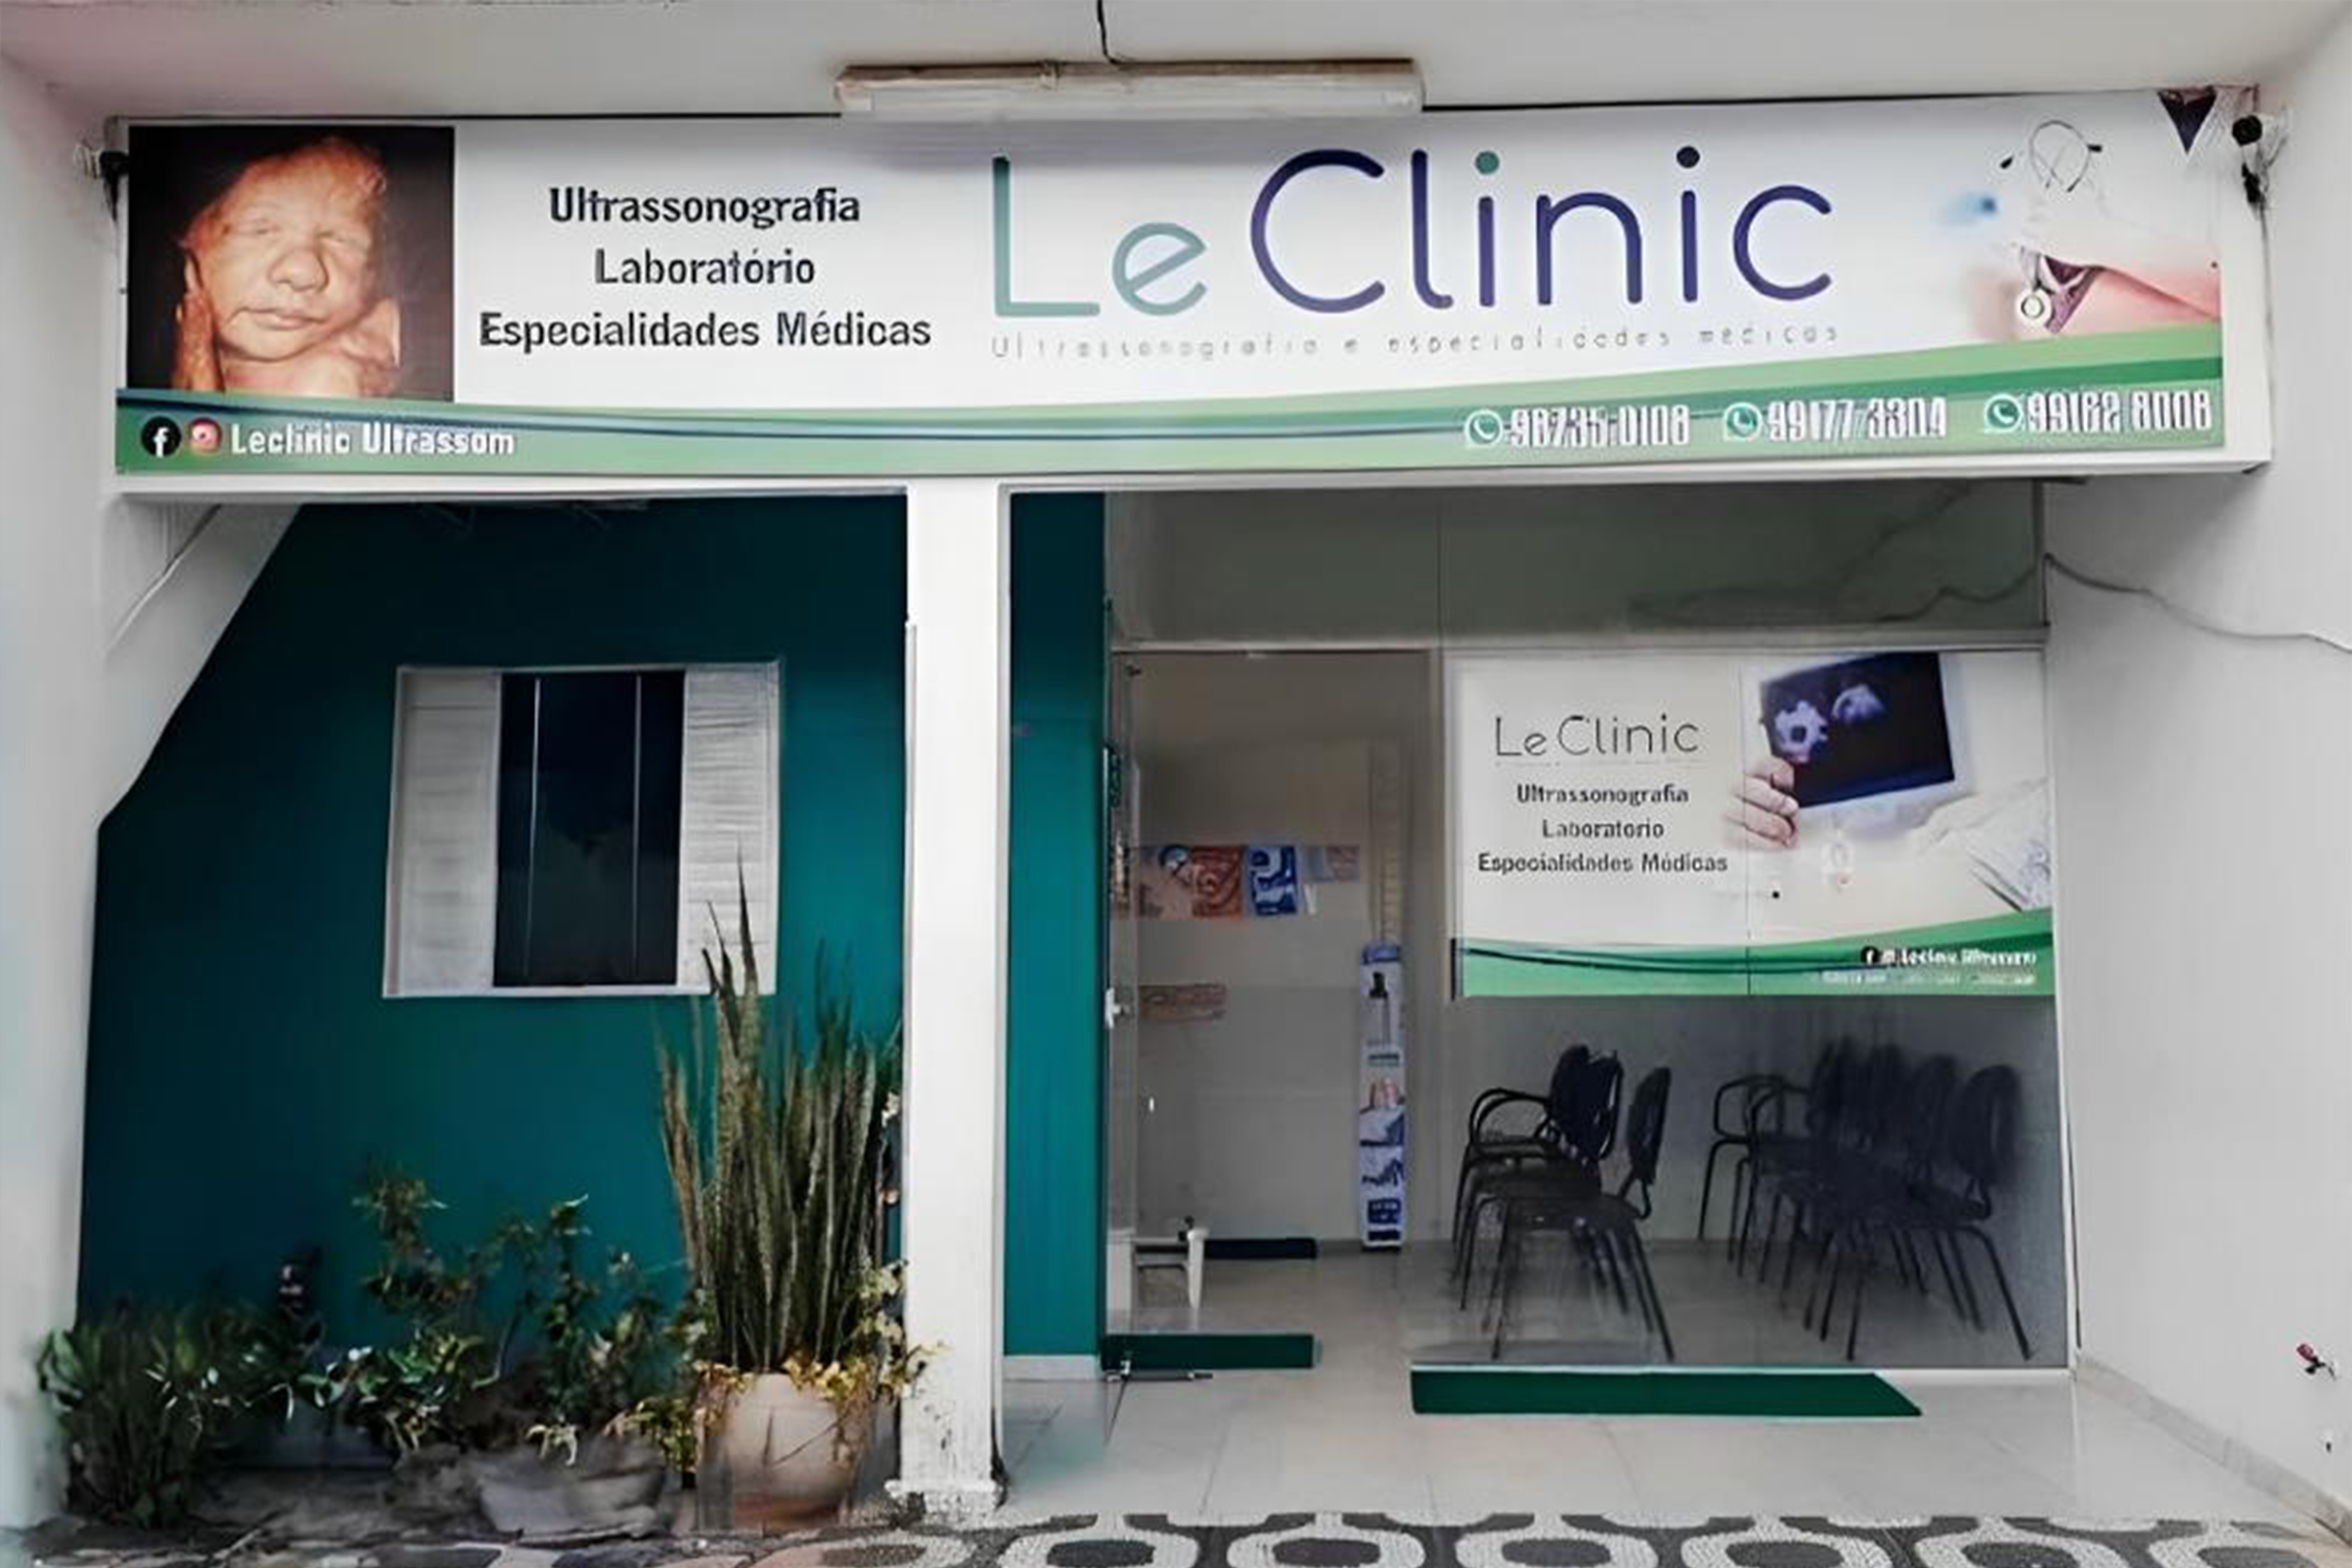 Le Clinic - Laboratório e Especialidades Médicas - São José da Laje